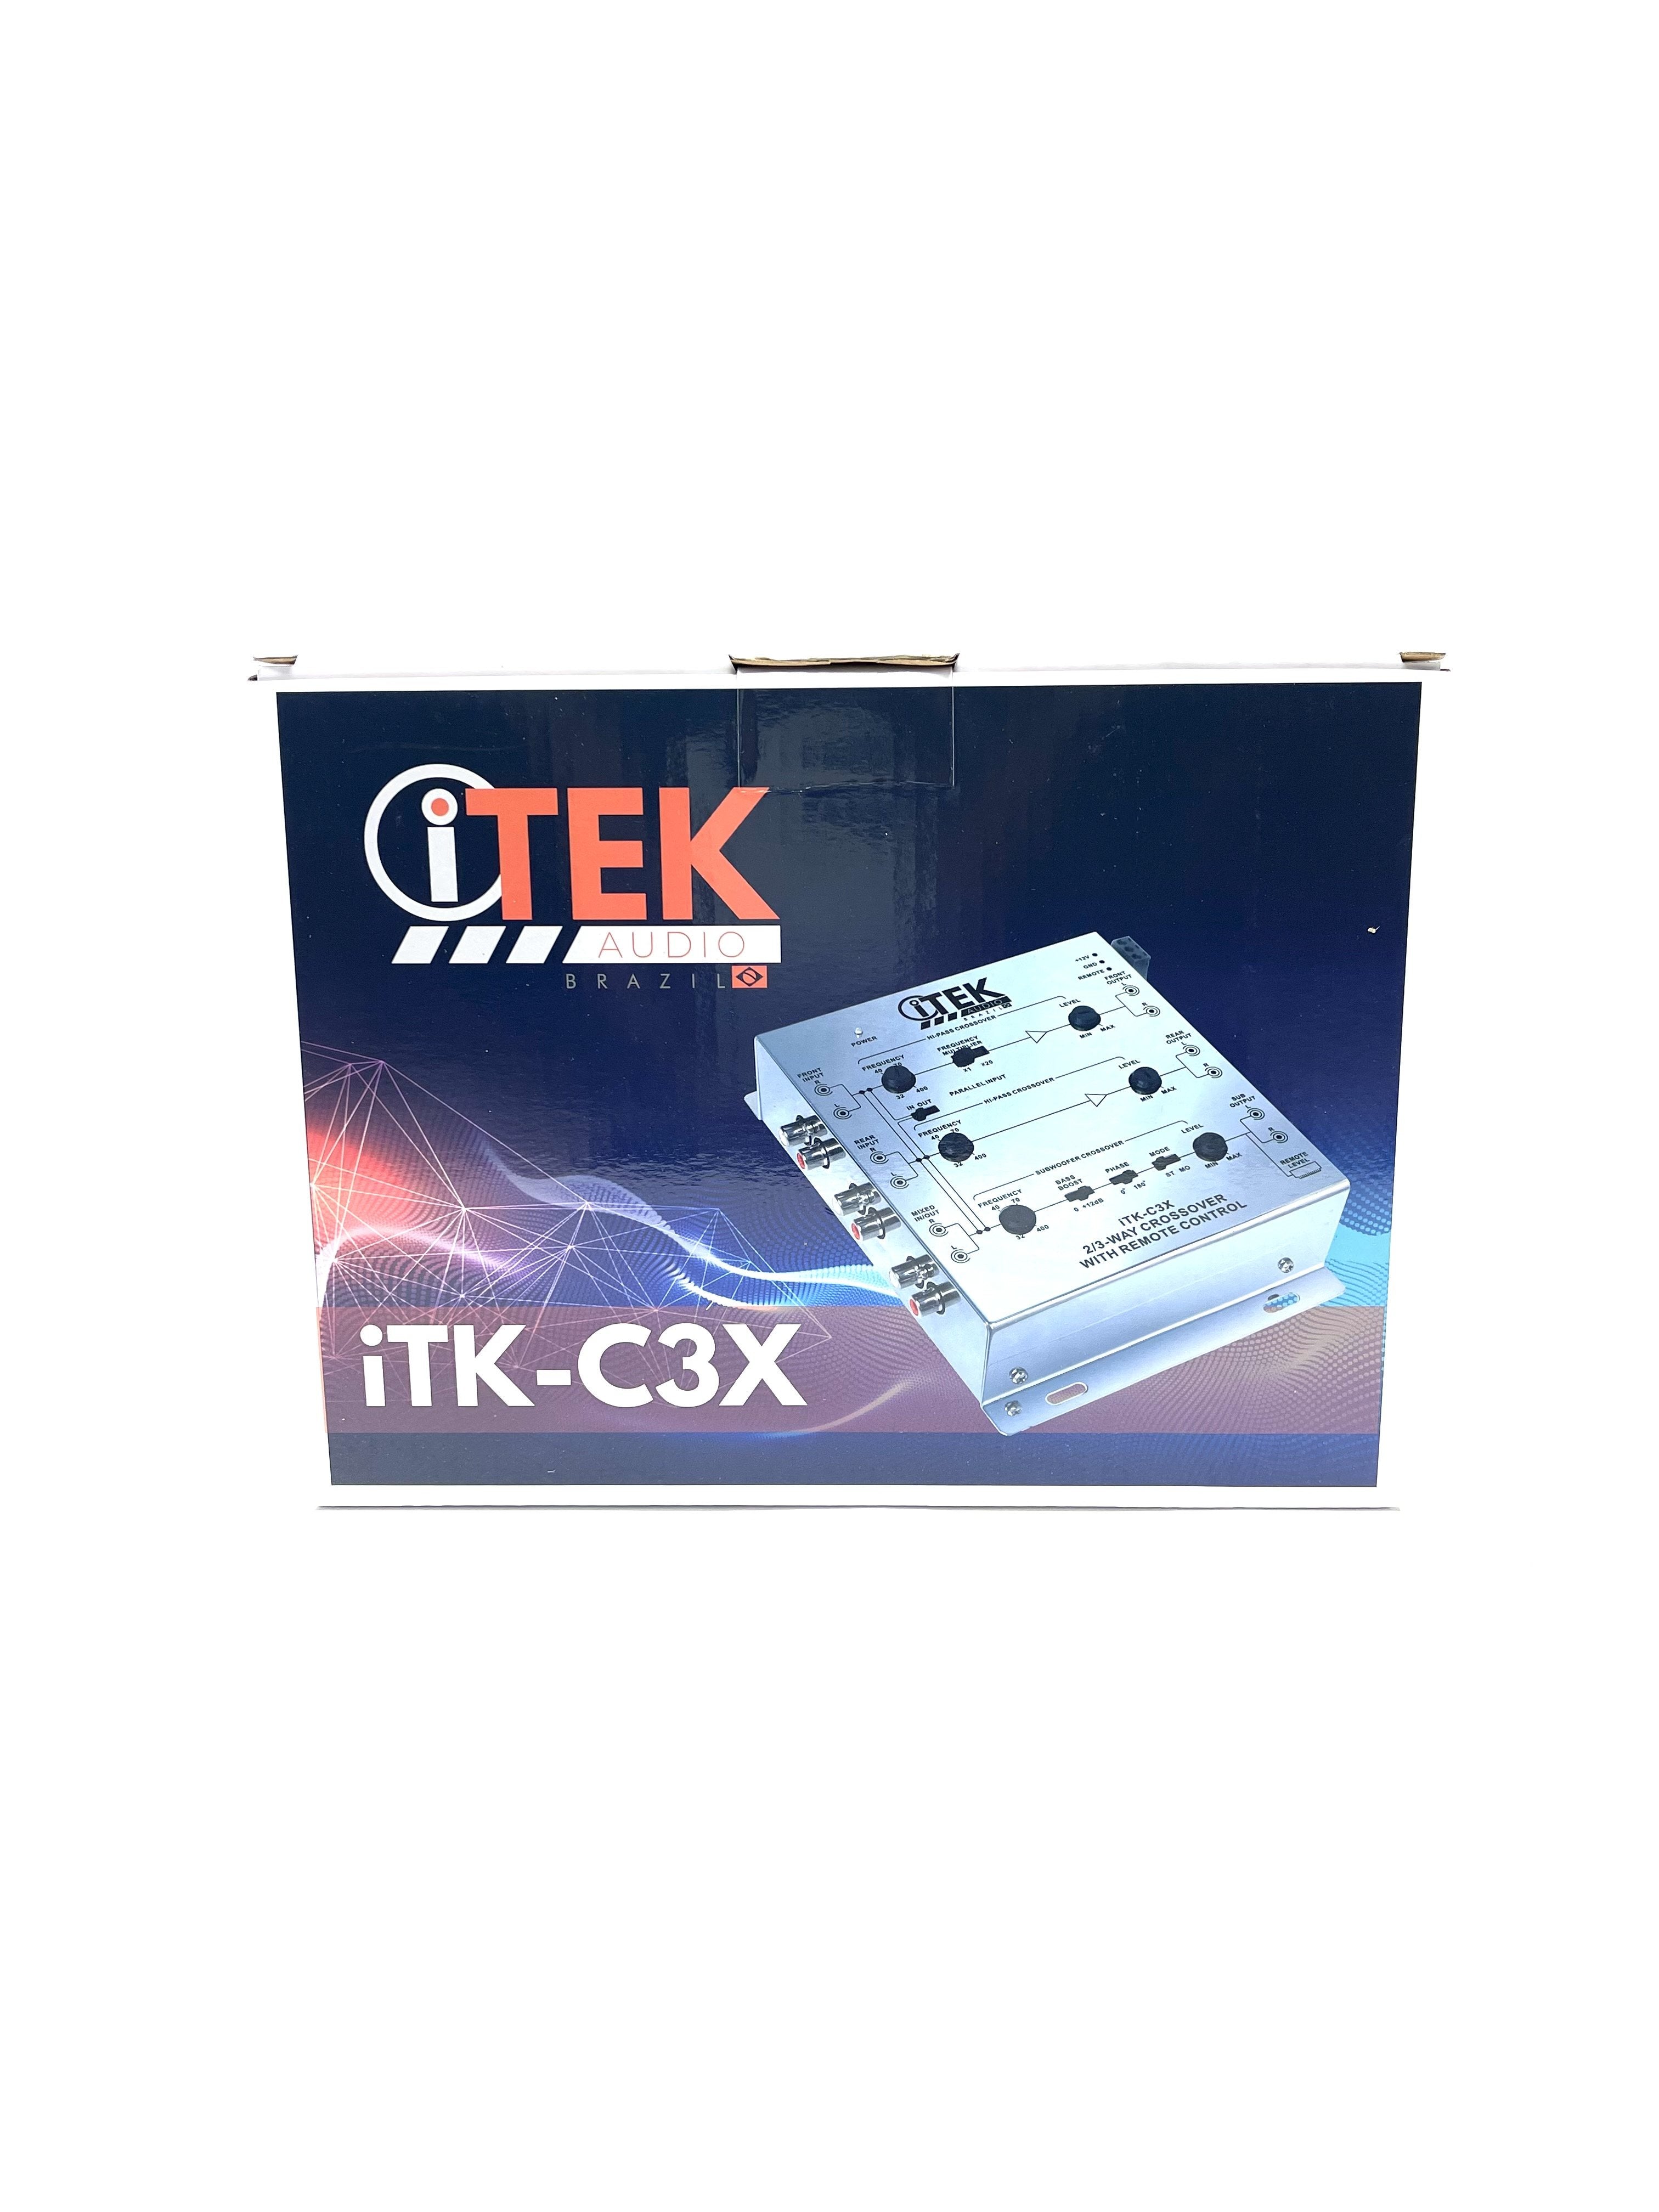 iTK-C3X